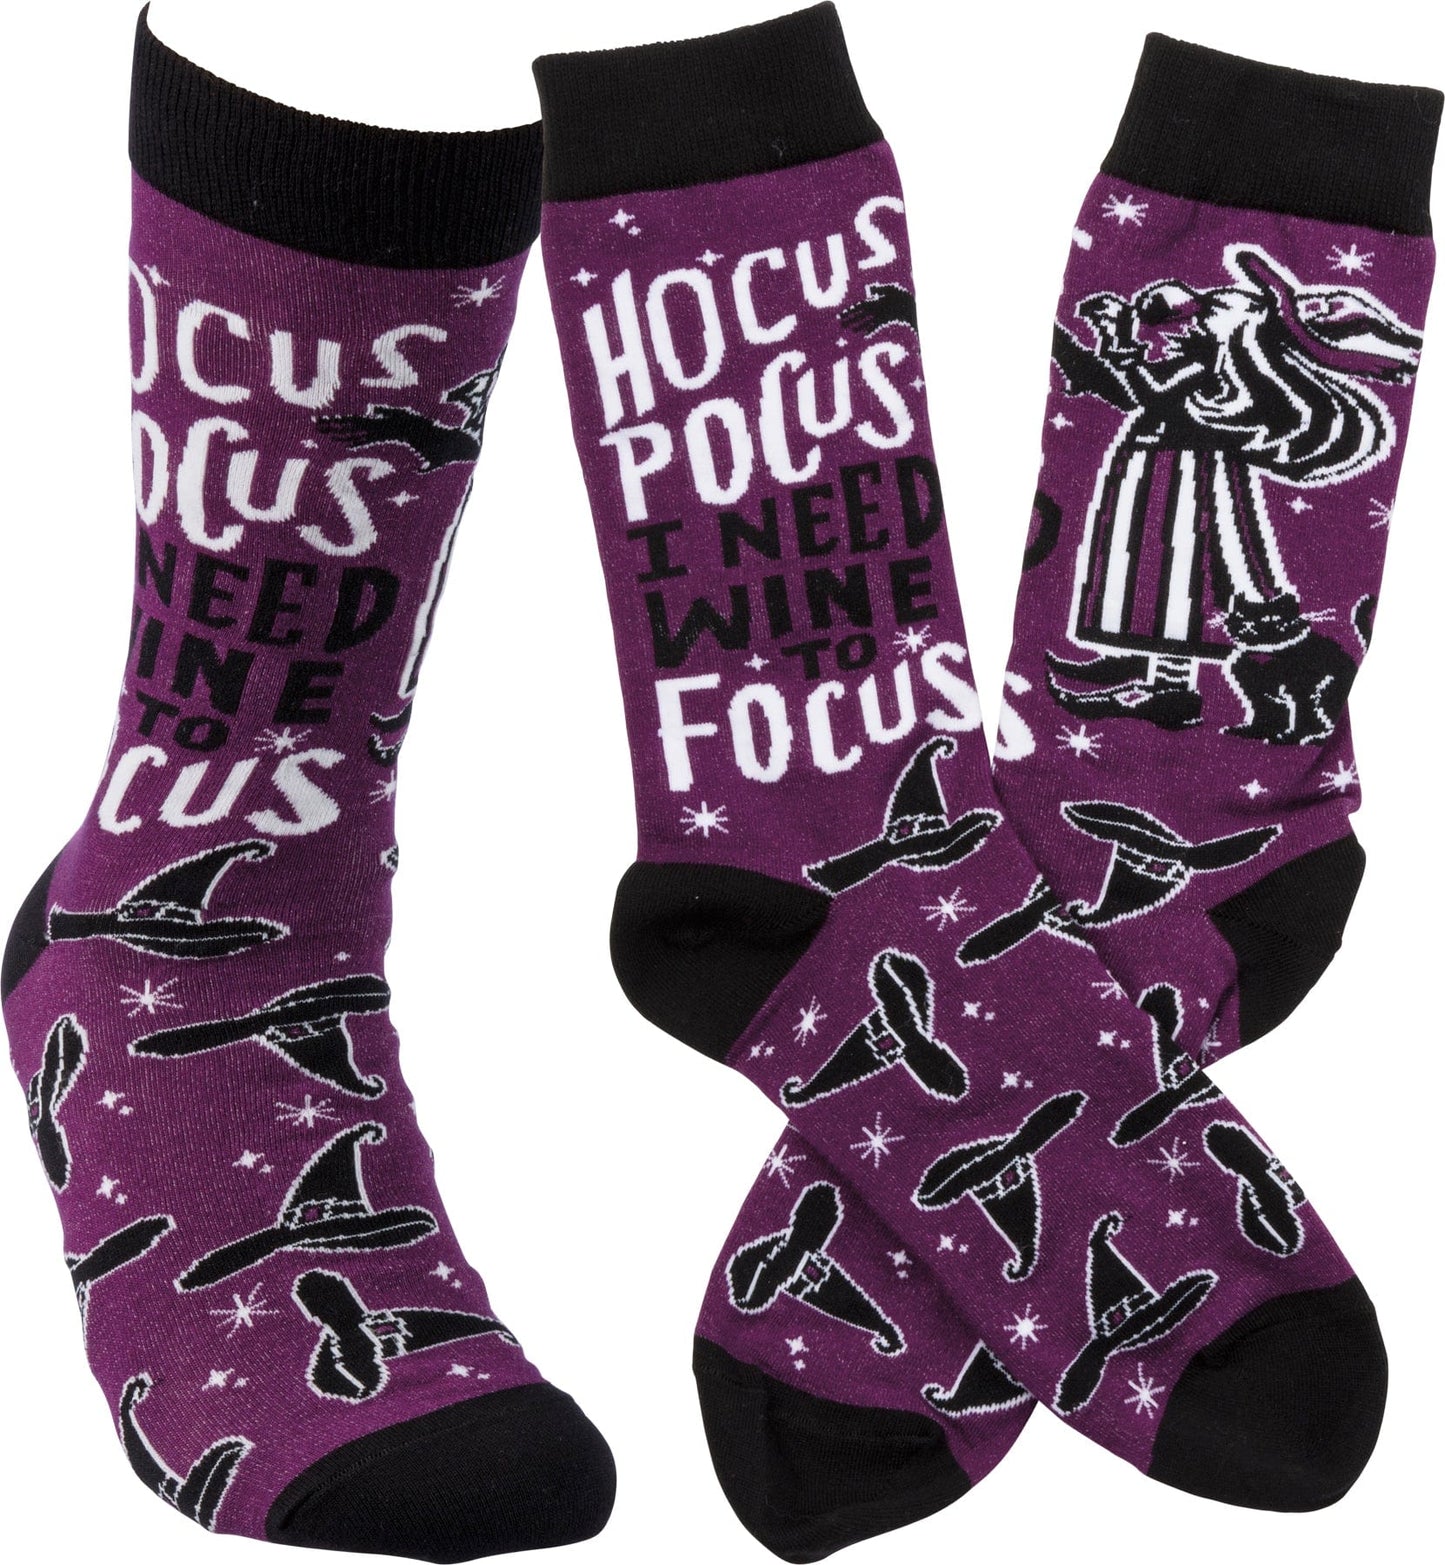 Socks One Size Fits Most Socks - Hocus Pocus I Need Wine To Focus PBK-114112